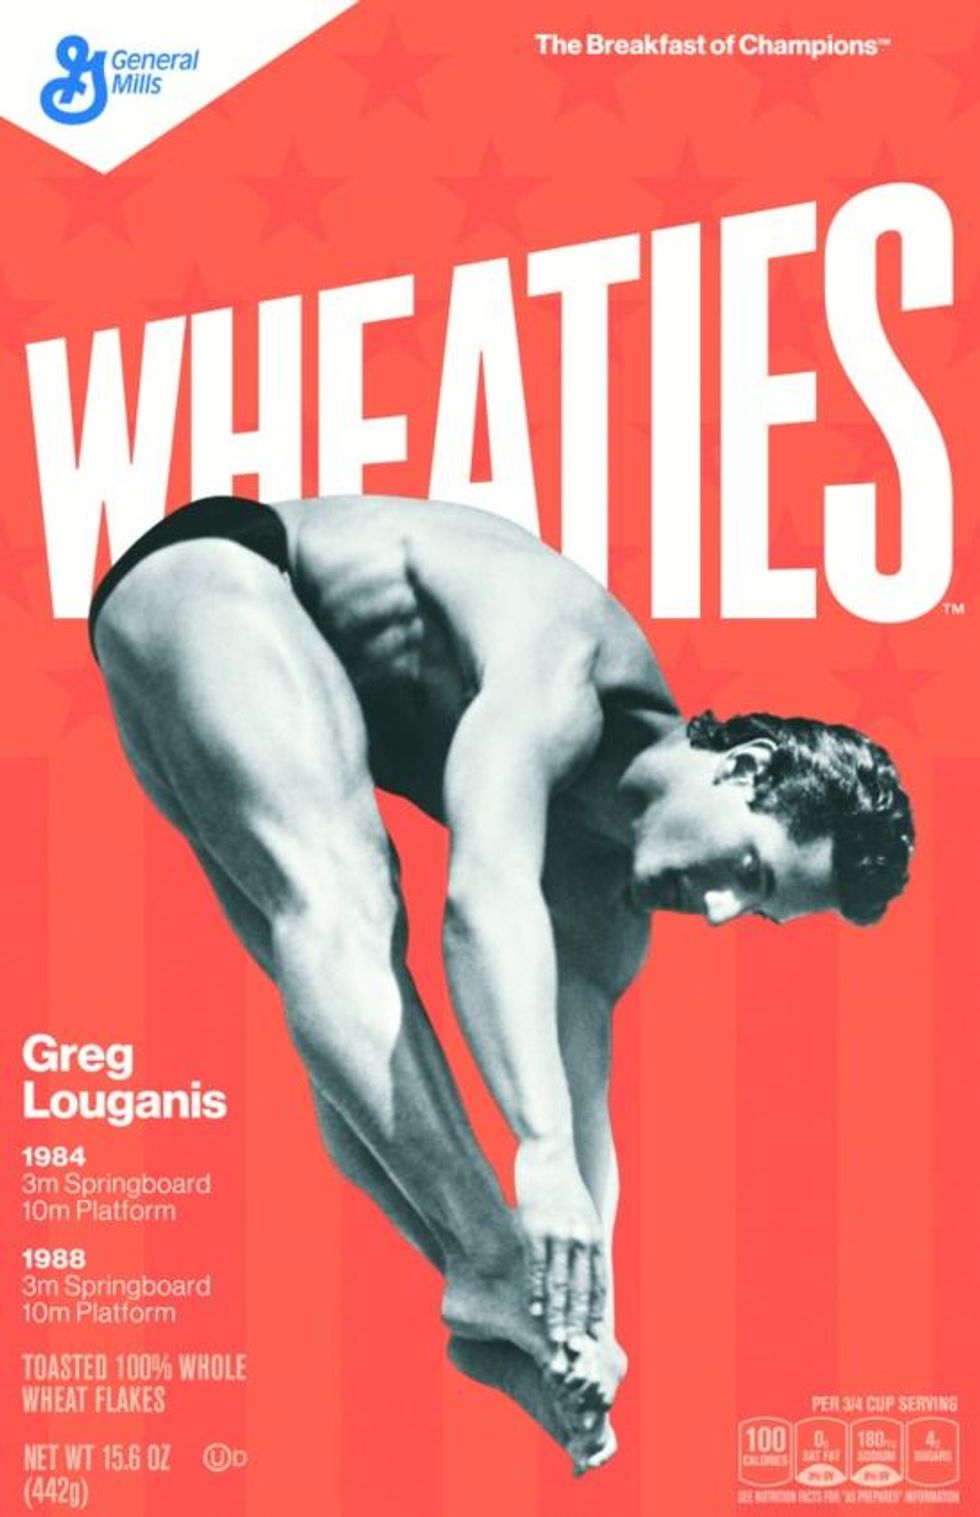 Greg Louganis Wheaties box.